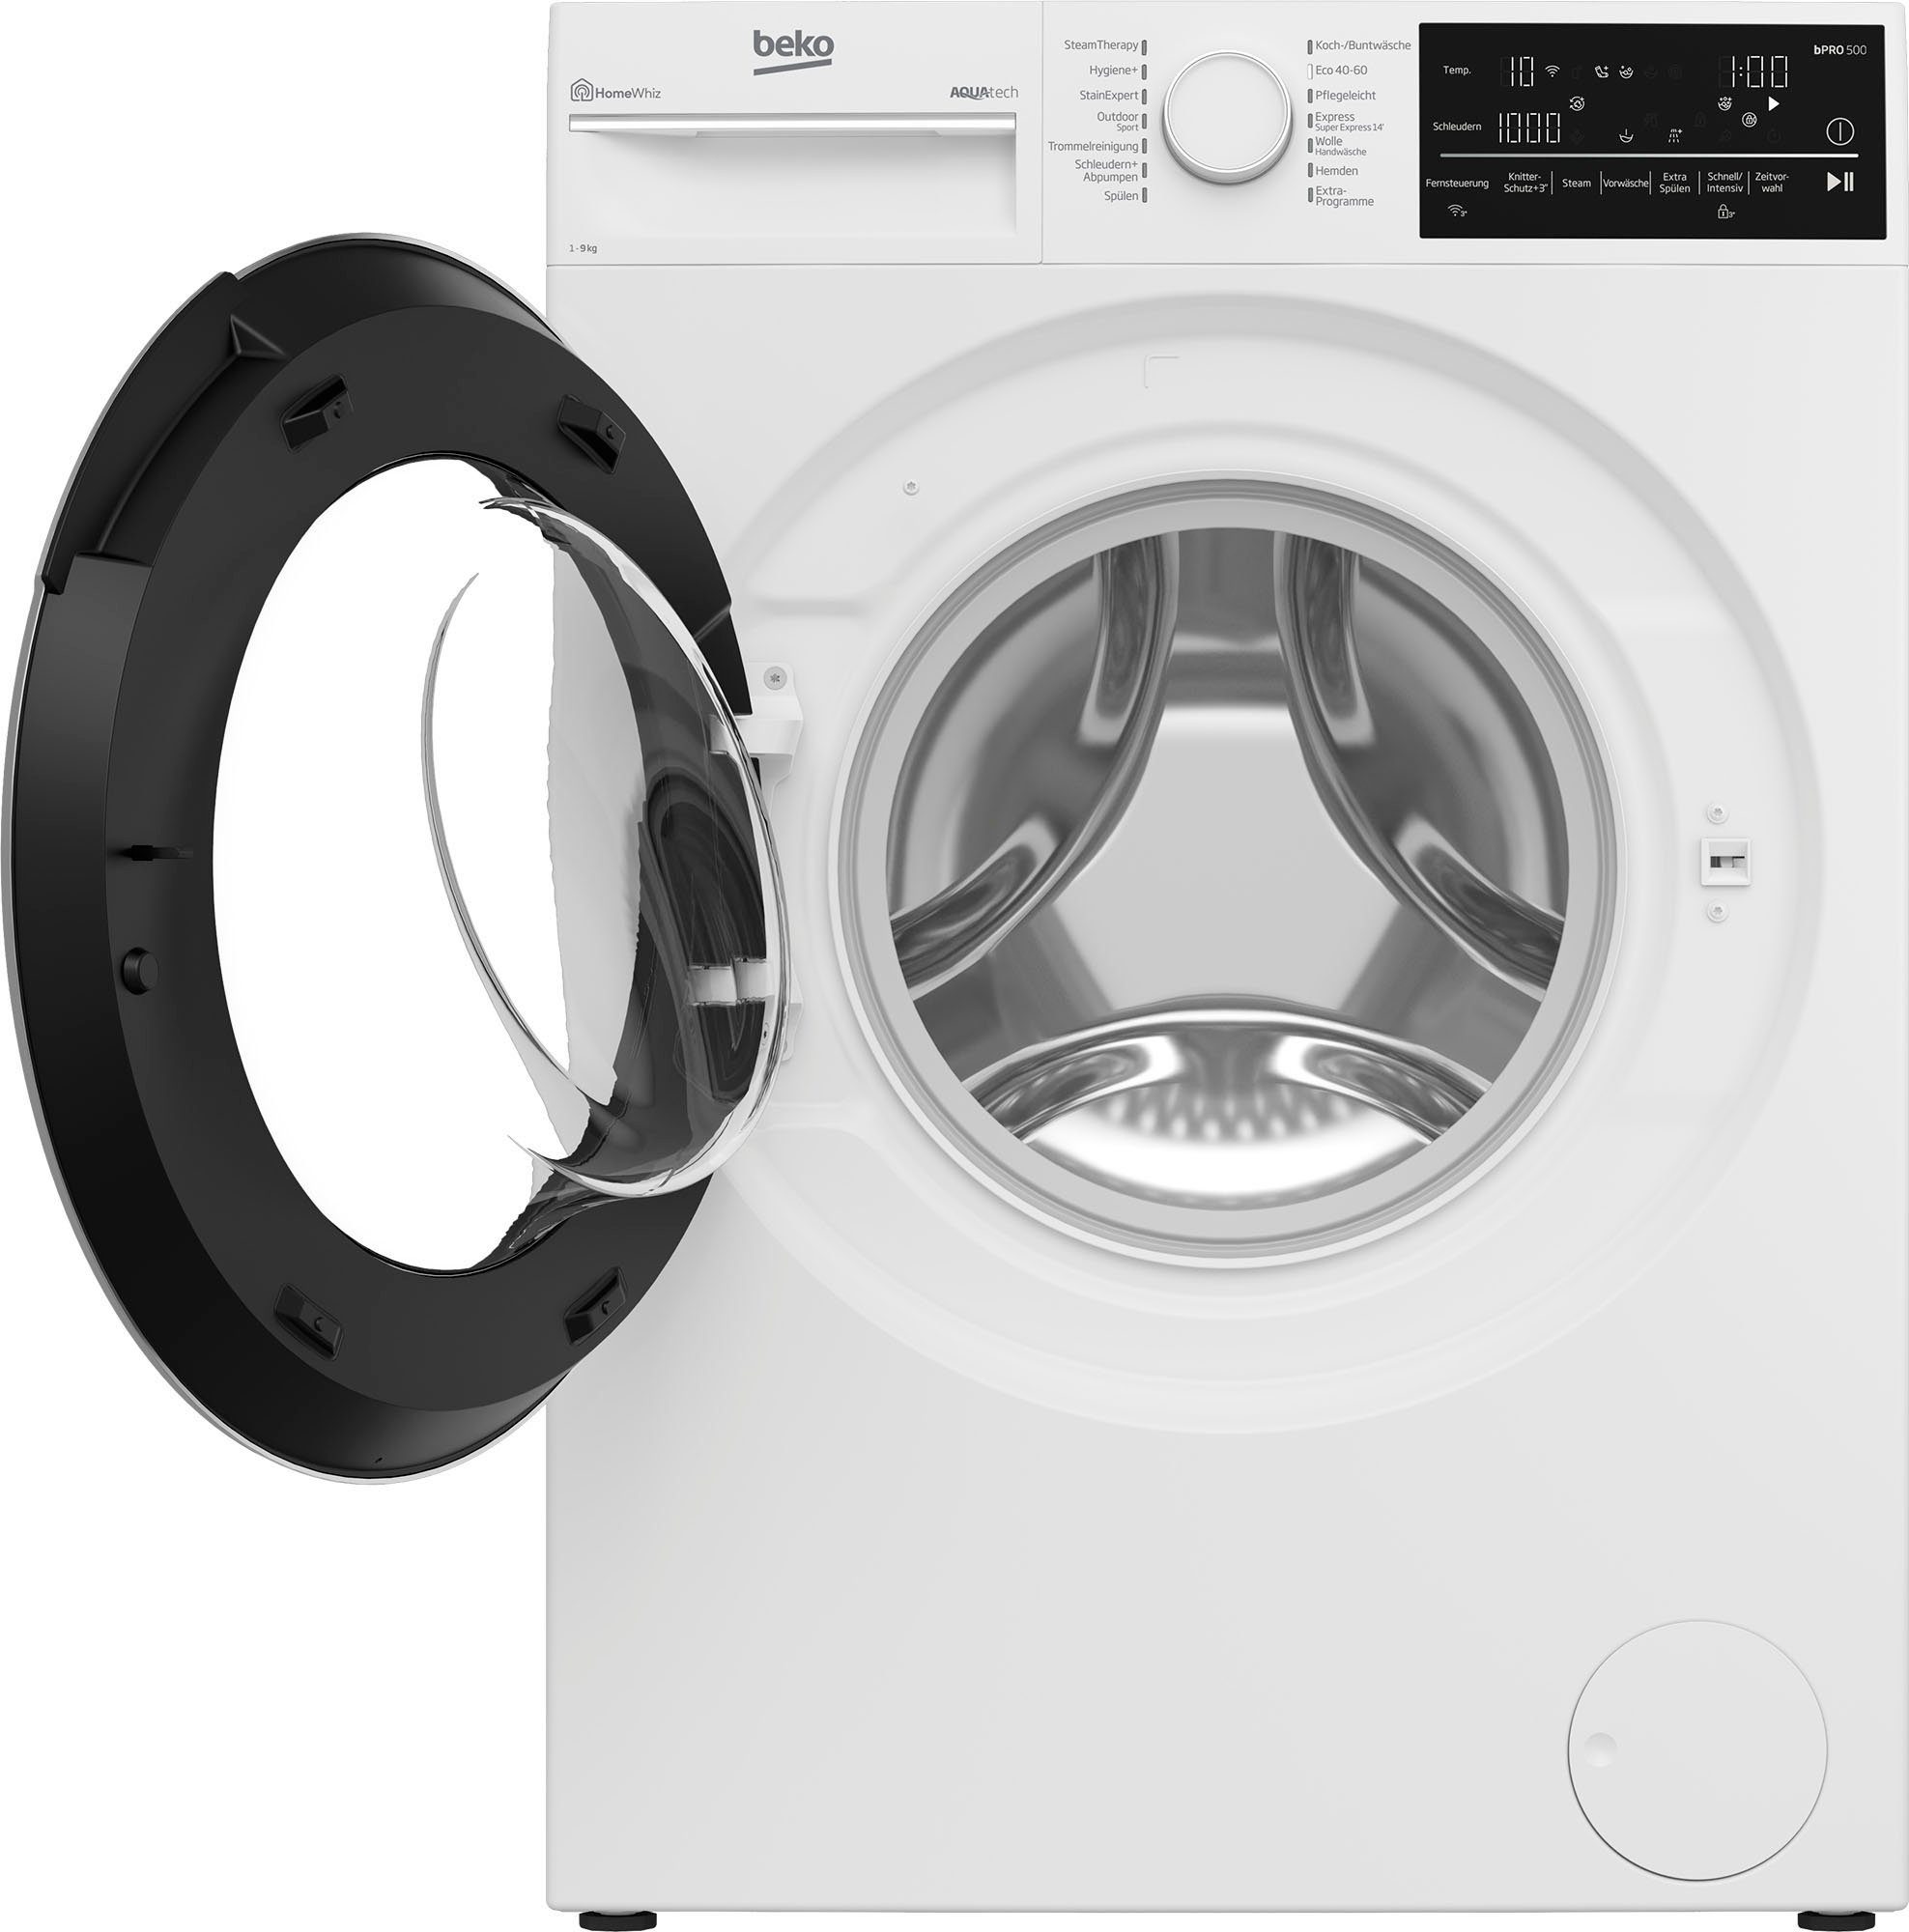 BEKO Waschmaschine B5WFT89418W, kg, 1400 9 U/min